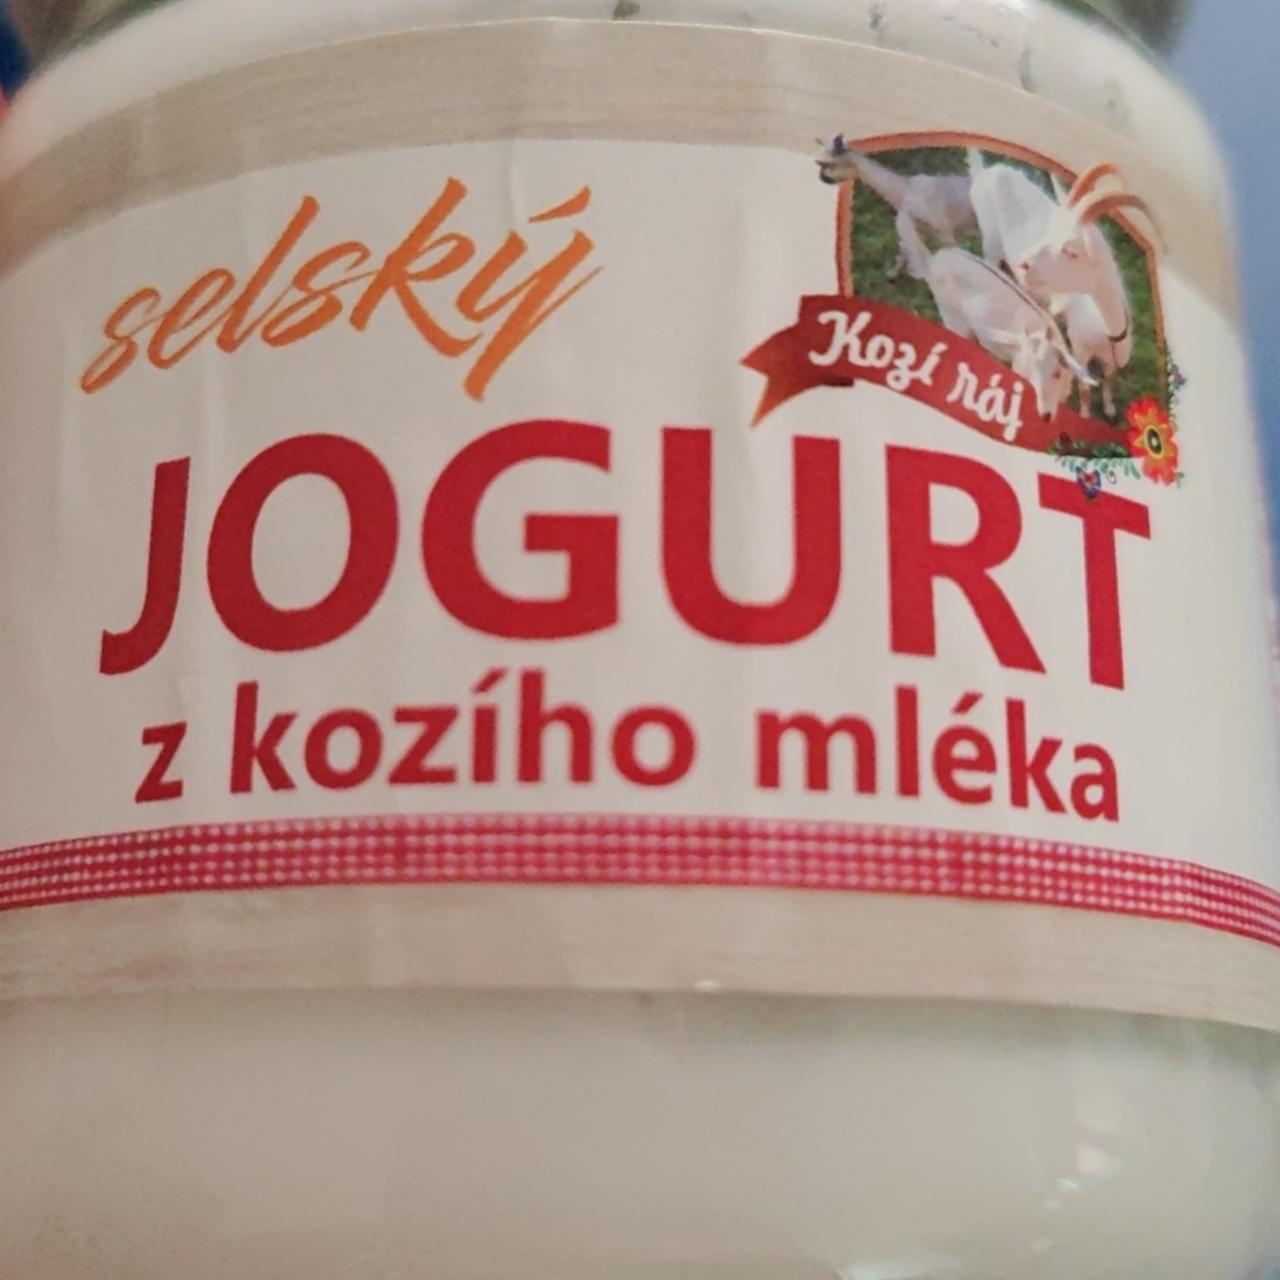 Fotografie - Selský jogurt z kozího mléka Kozí ráj